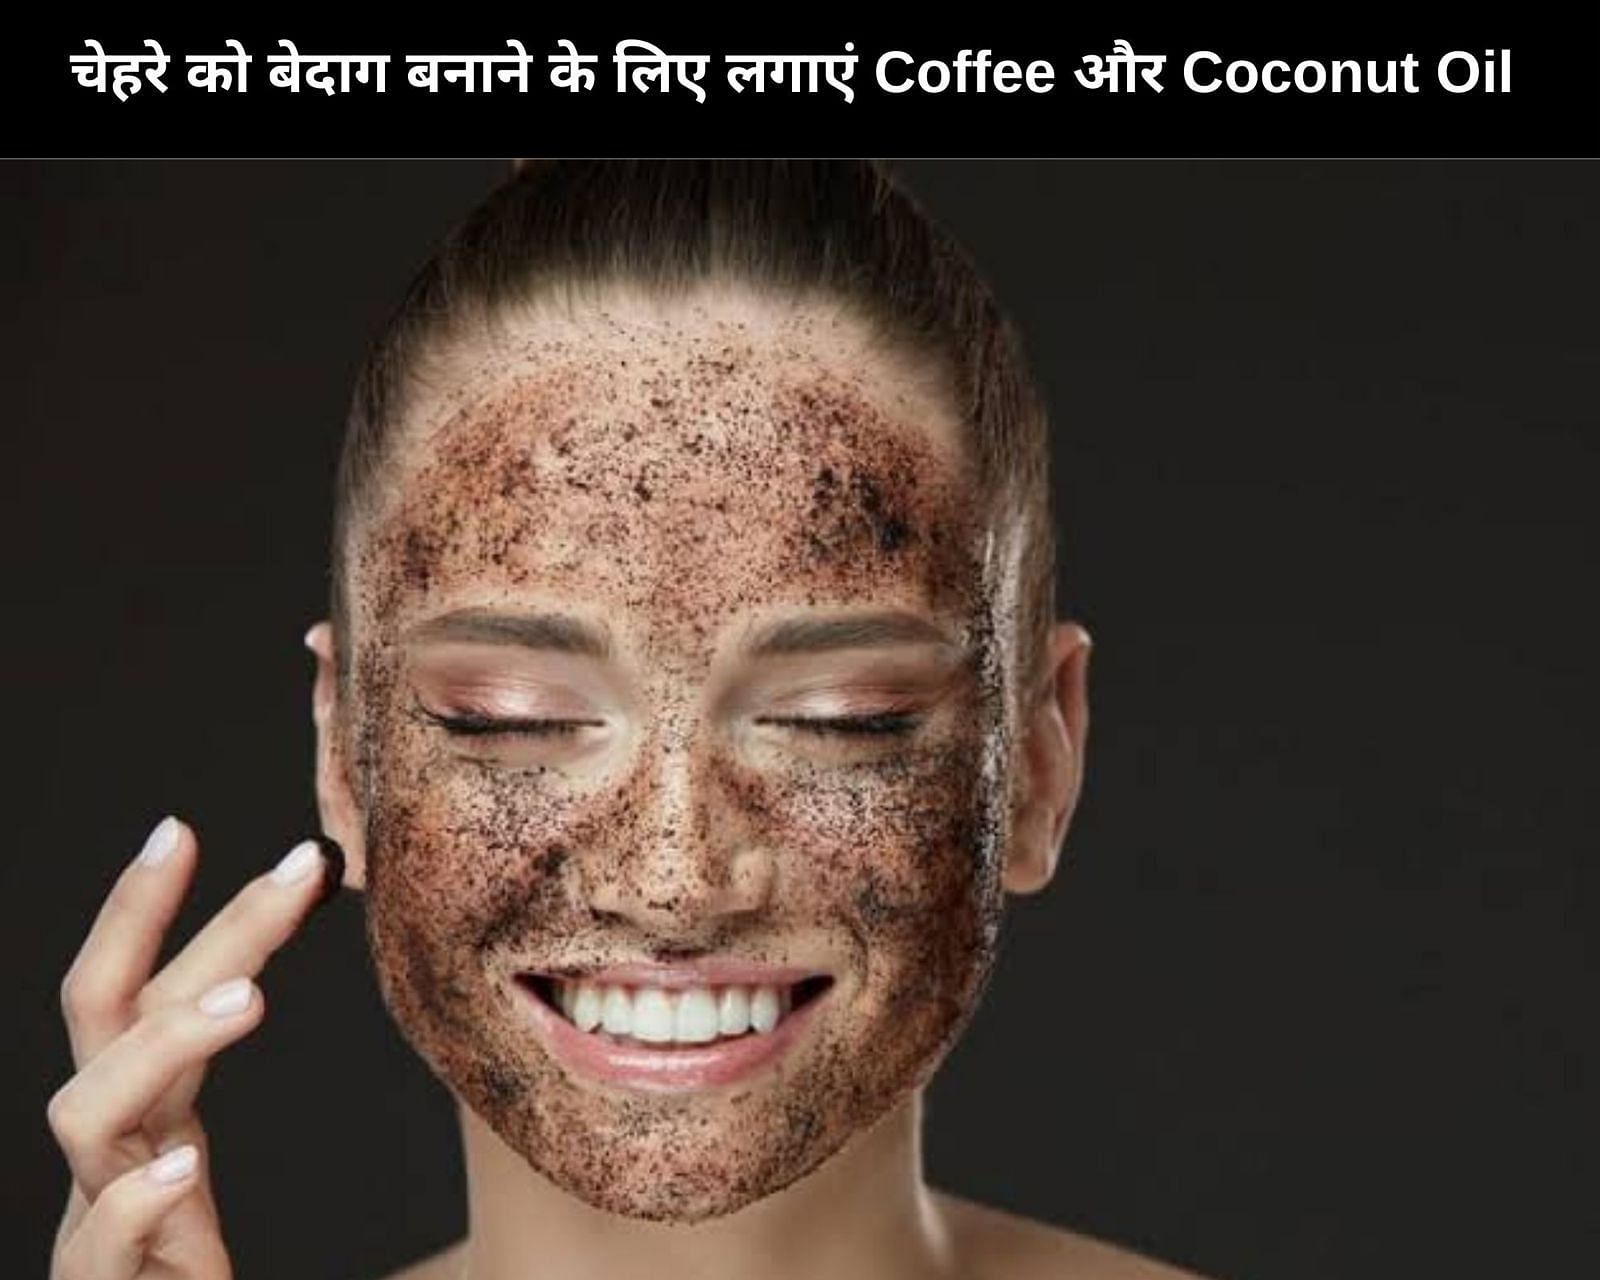 चेहरे को बेदाग बनाने के लिए लगाएं Coffee और Coconut Oil (फोटो - sportskeedaहिन्दी)